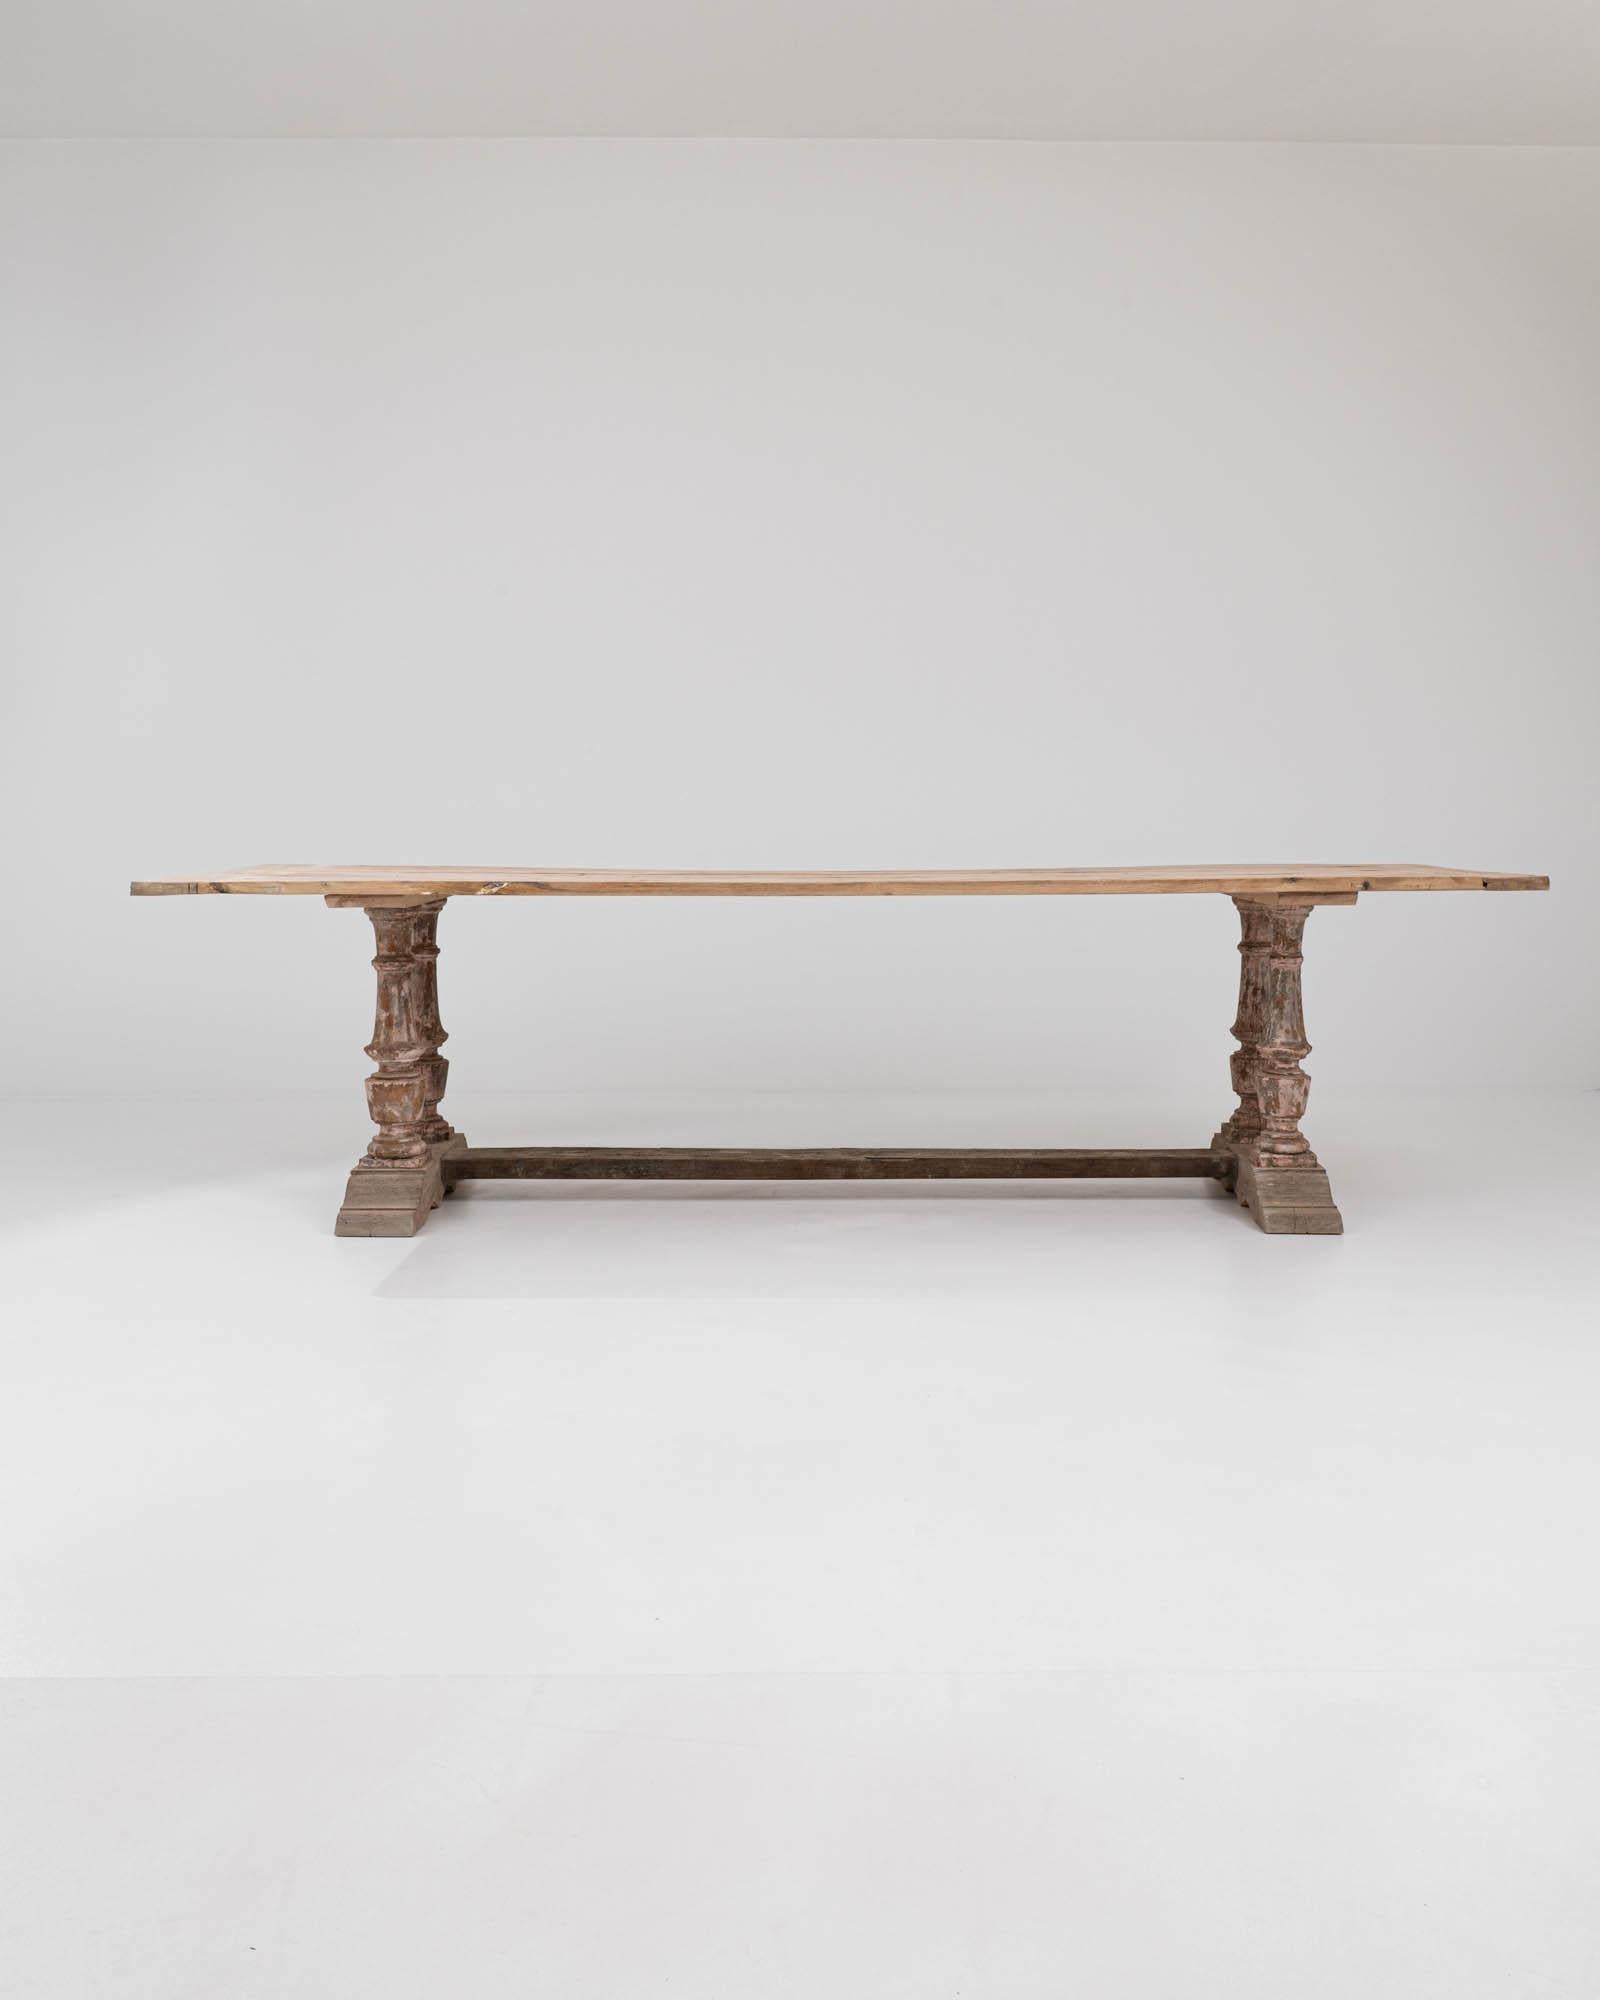 Dieser in Nordafrika hergestellte Esstisch vereint eklektische Elemente in seinem einzigartigen Design. Die Tischplatte aus rohem Holz ruht auf einem gealterten Sockel mit vier kunstvoll geschnitzten Balustern, die an stabilen Klammerfüßen befestigt